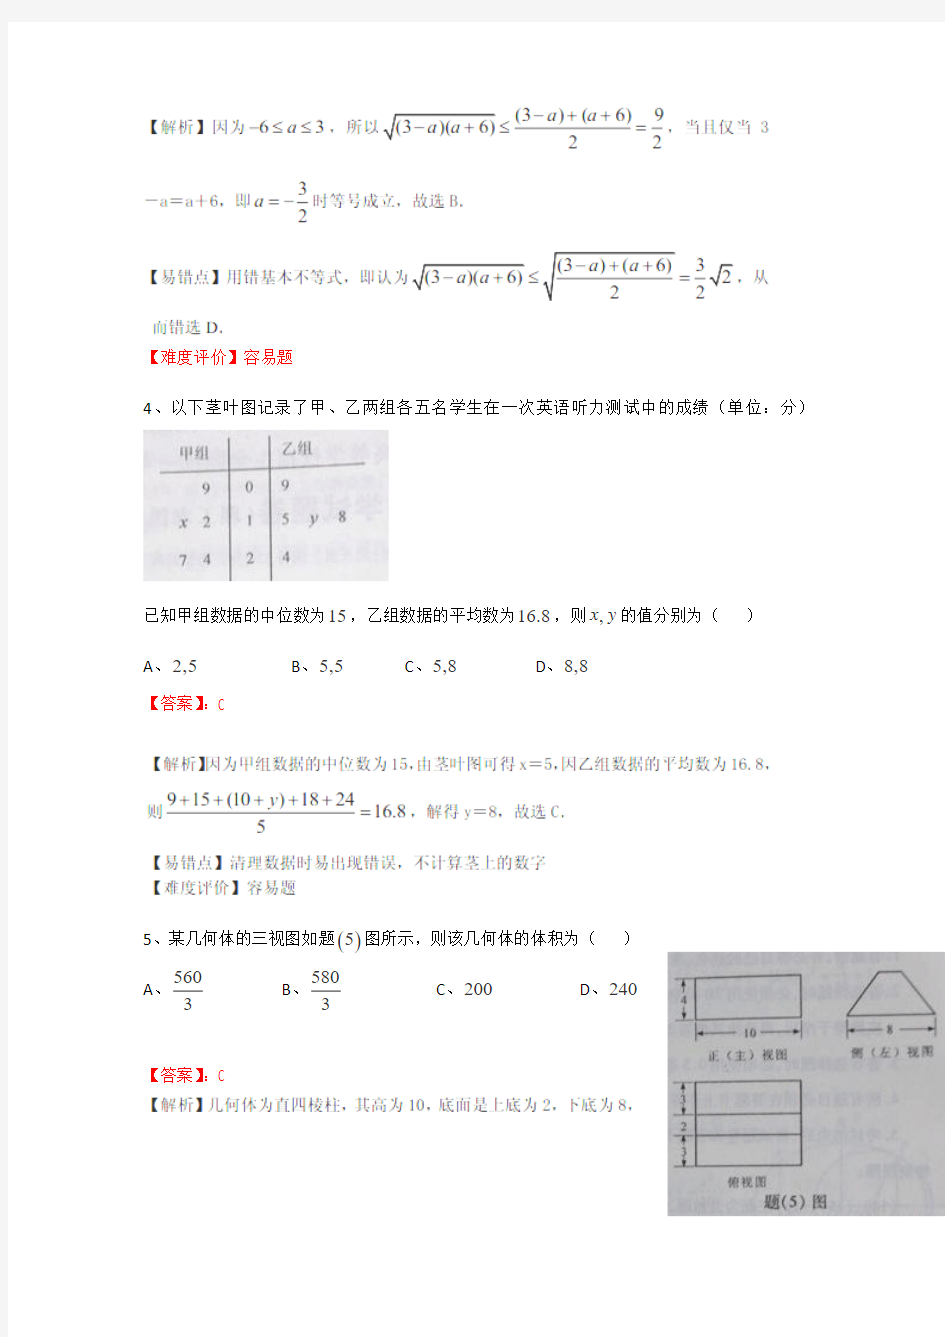 2017年高考真题——理科数学(重庆卷)解析版